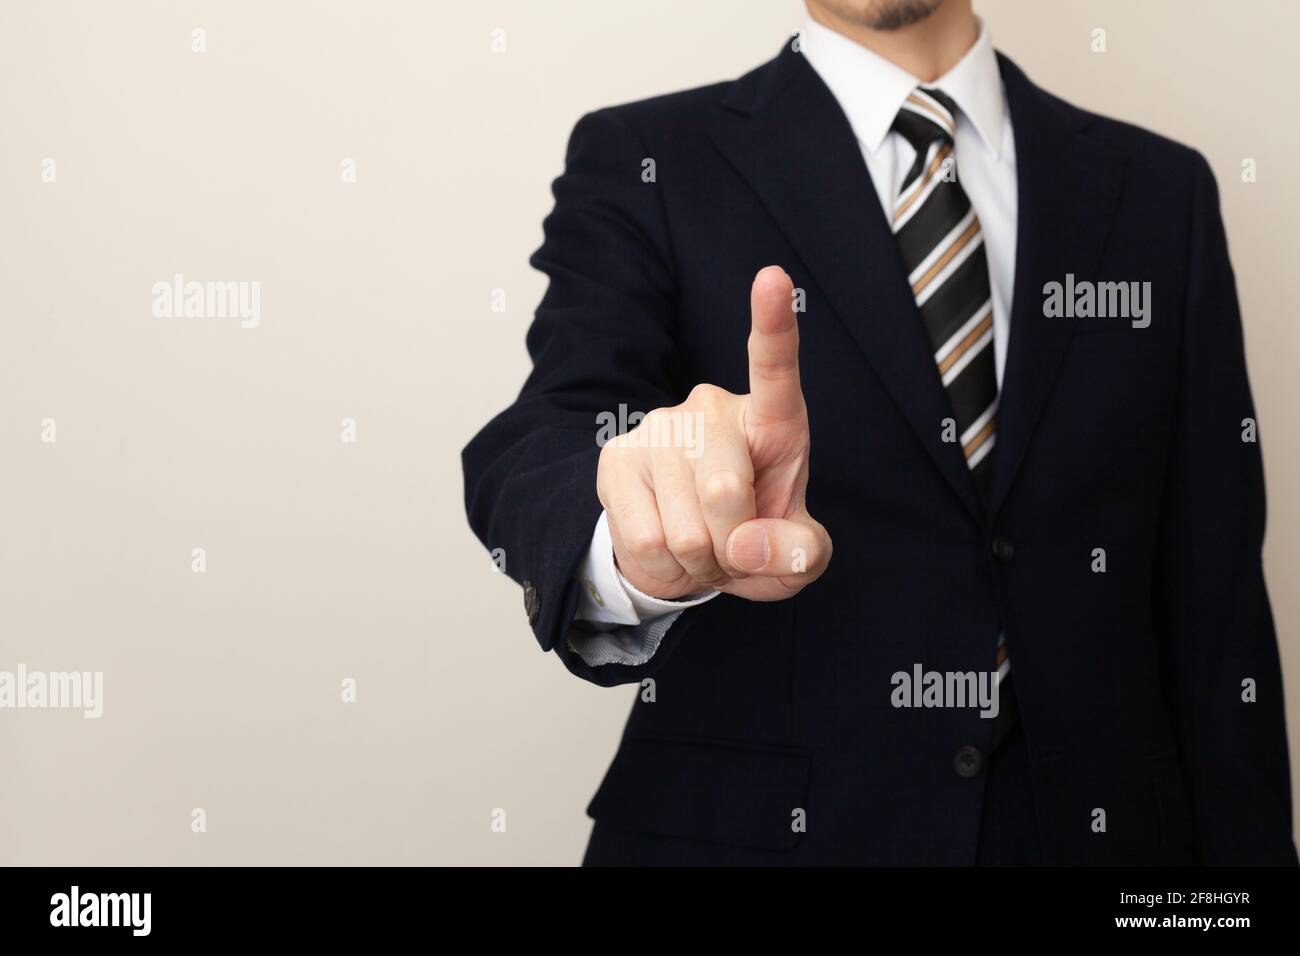 Main d'un homme dans un costume utilisant l'écran tactile Banque D'Images